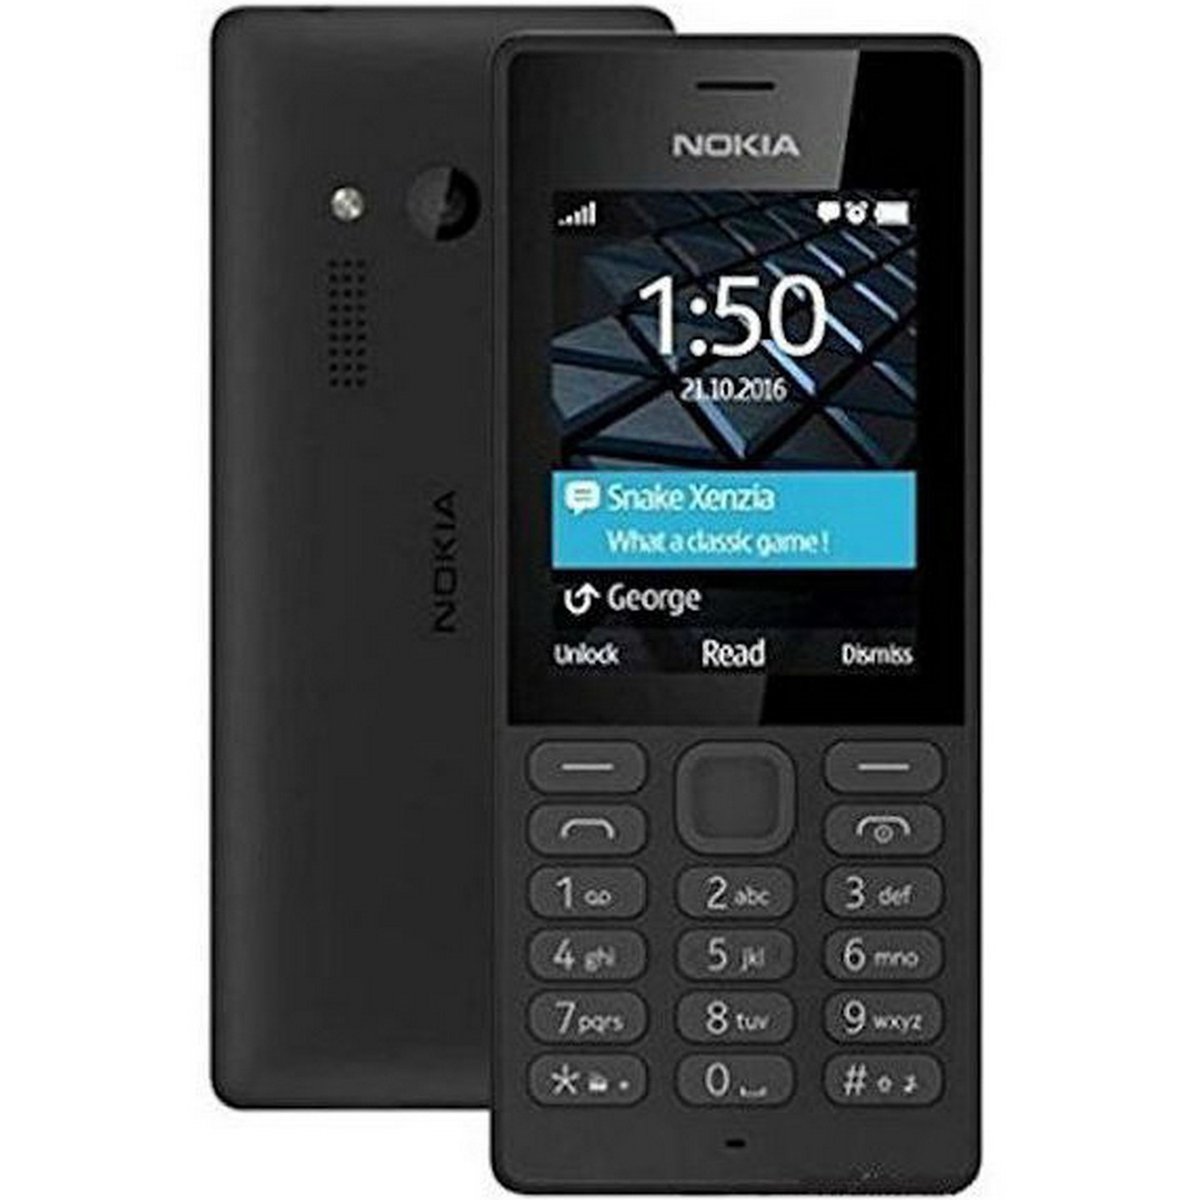 Nokia Featured Phone 150 Dual SIM Black